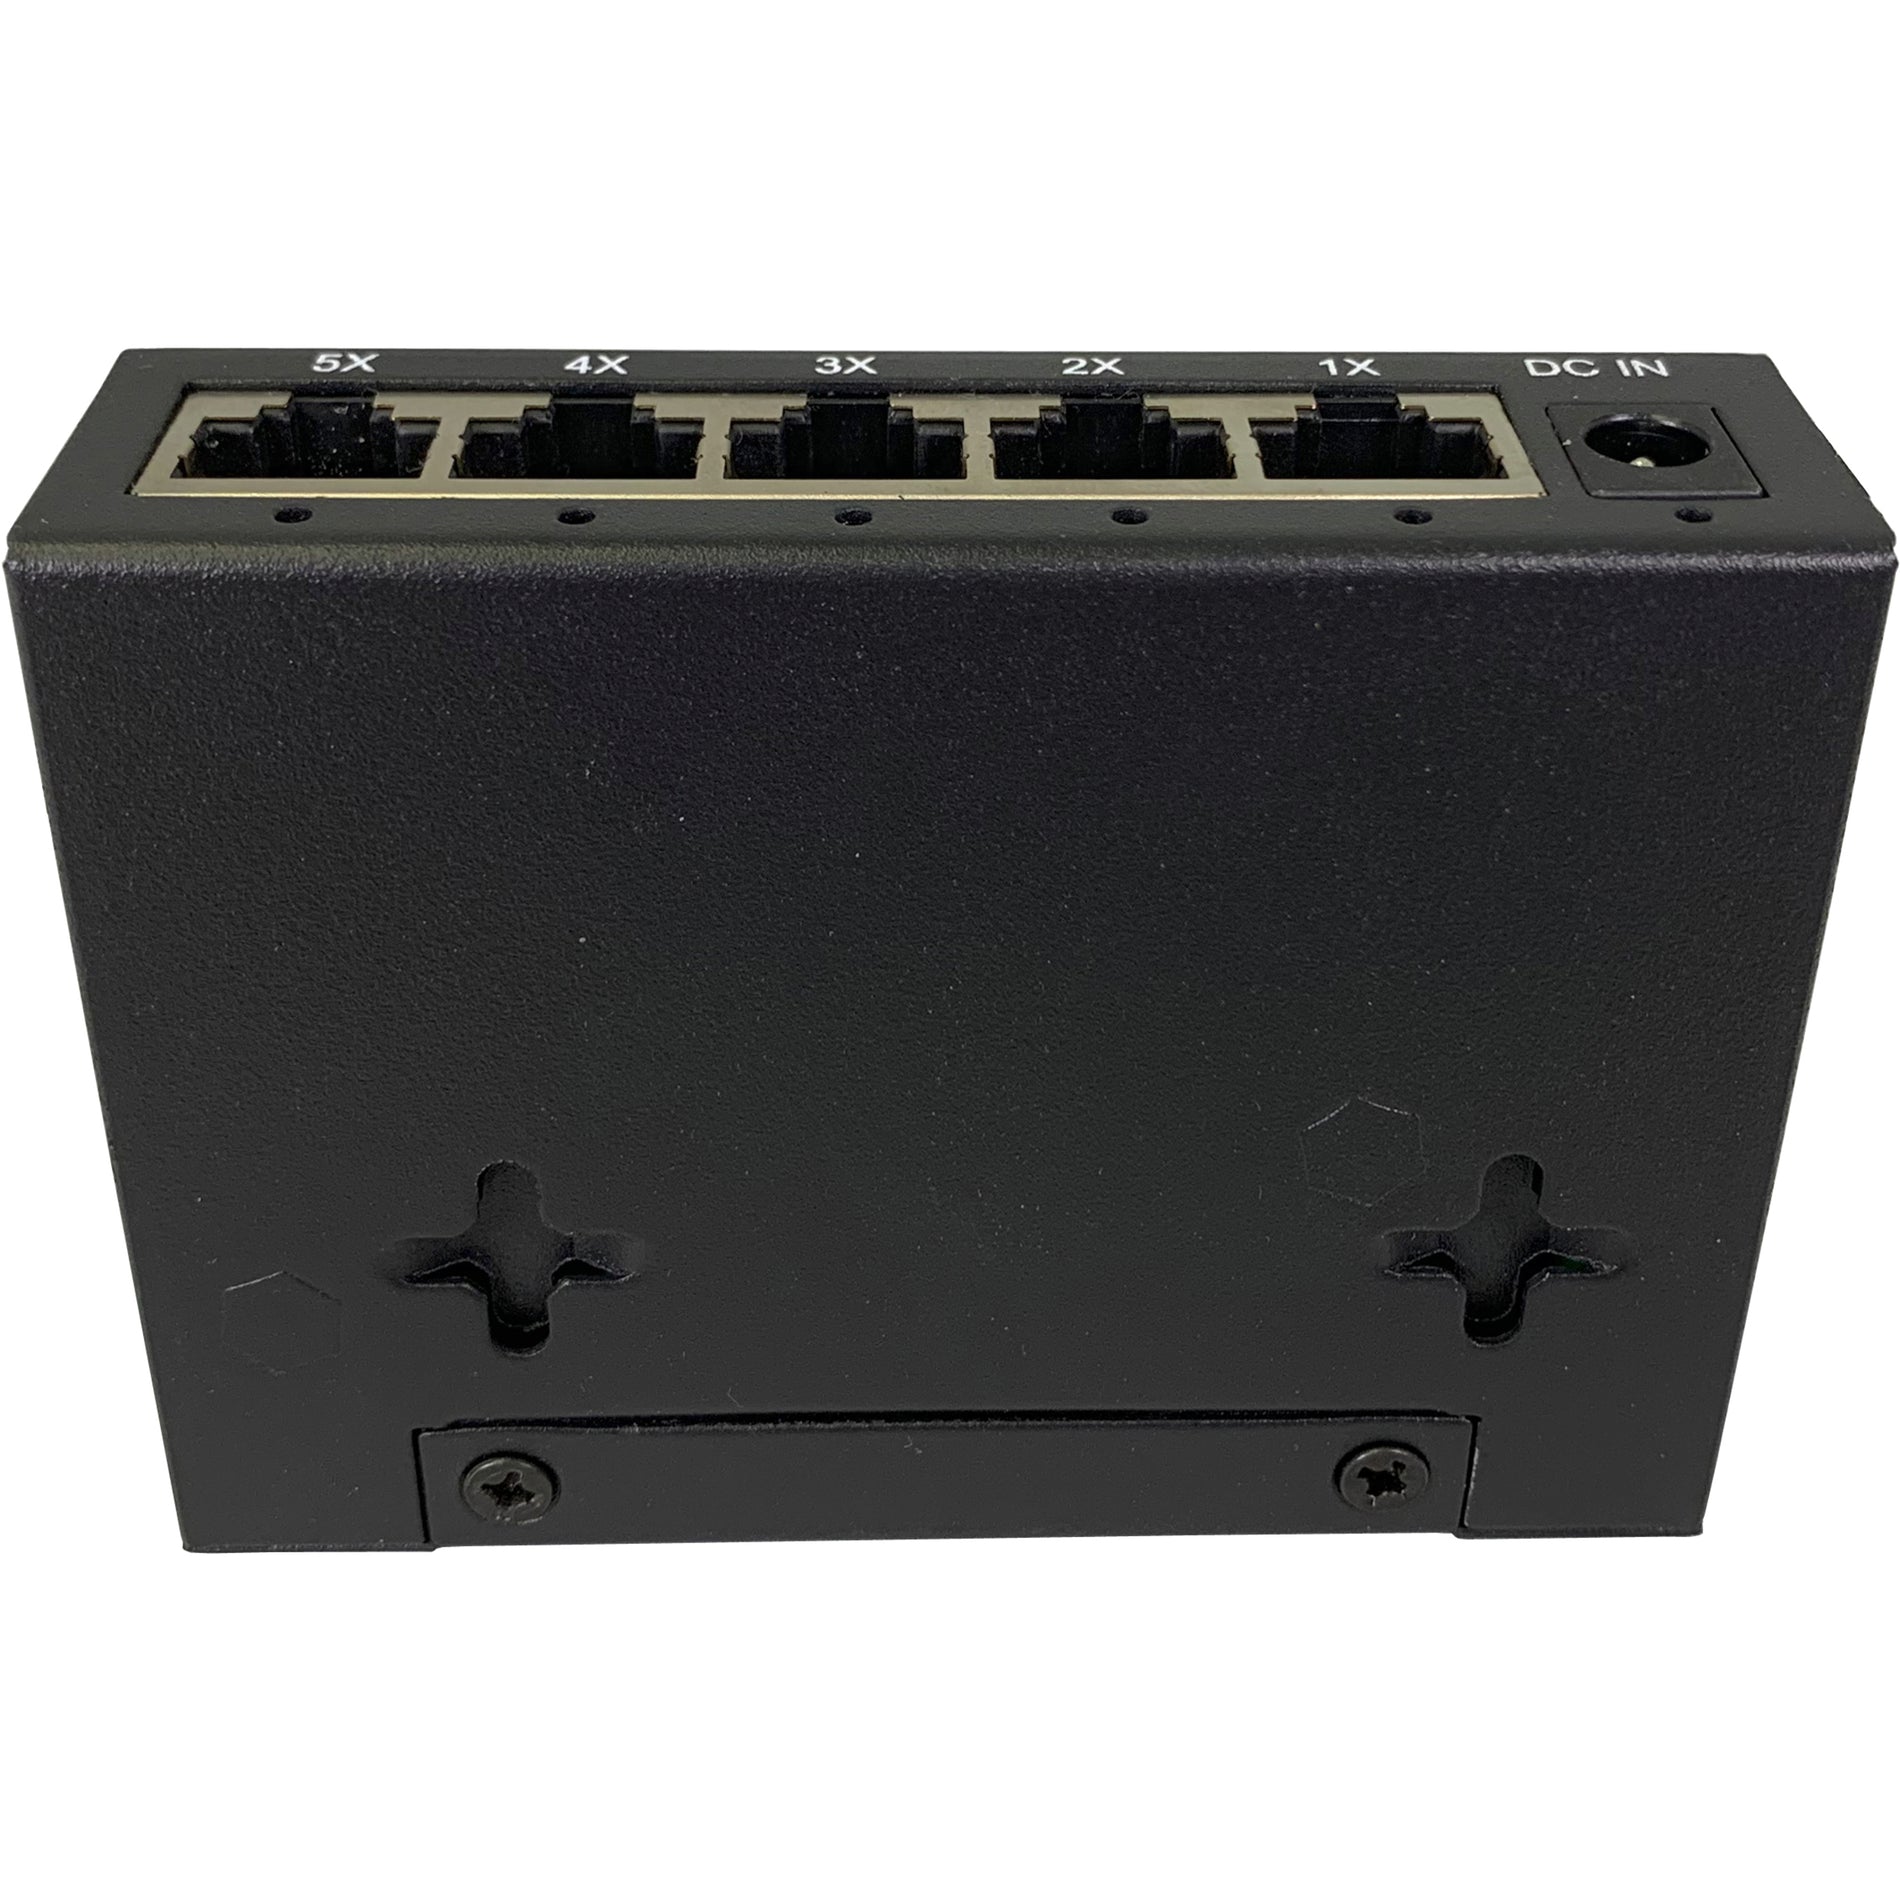 Amer SG5D V2 5 Port 10/100/1000 Mbps Gigabit Ethernet Desktop Metal Switch, 10Gbps Capacity, Wall Mount